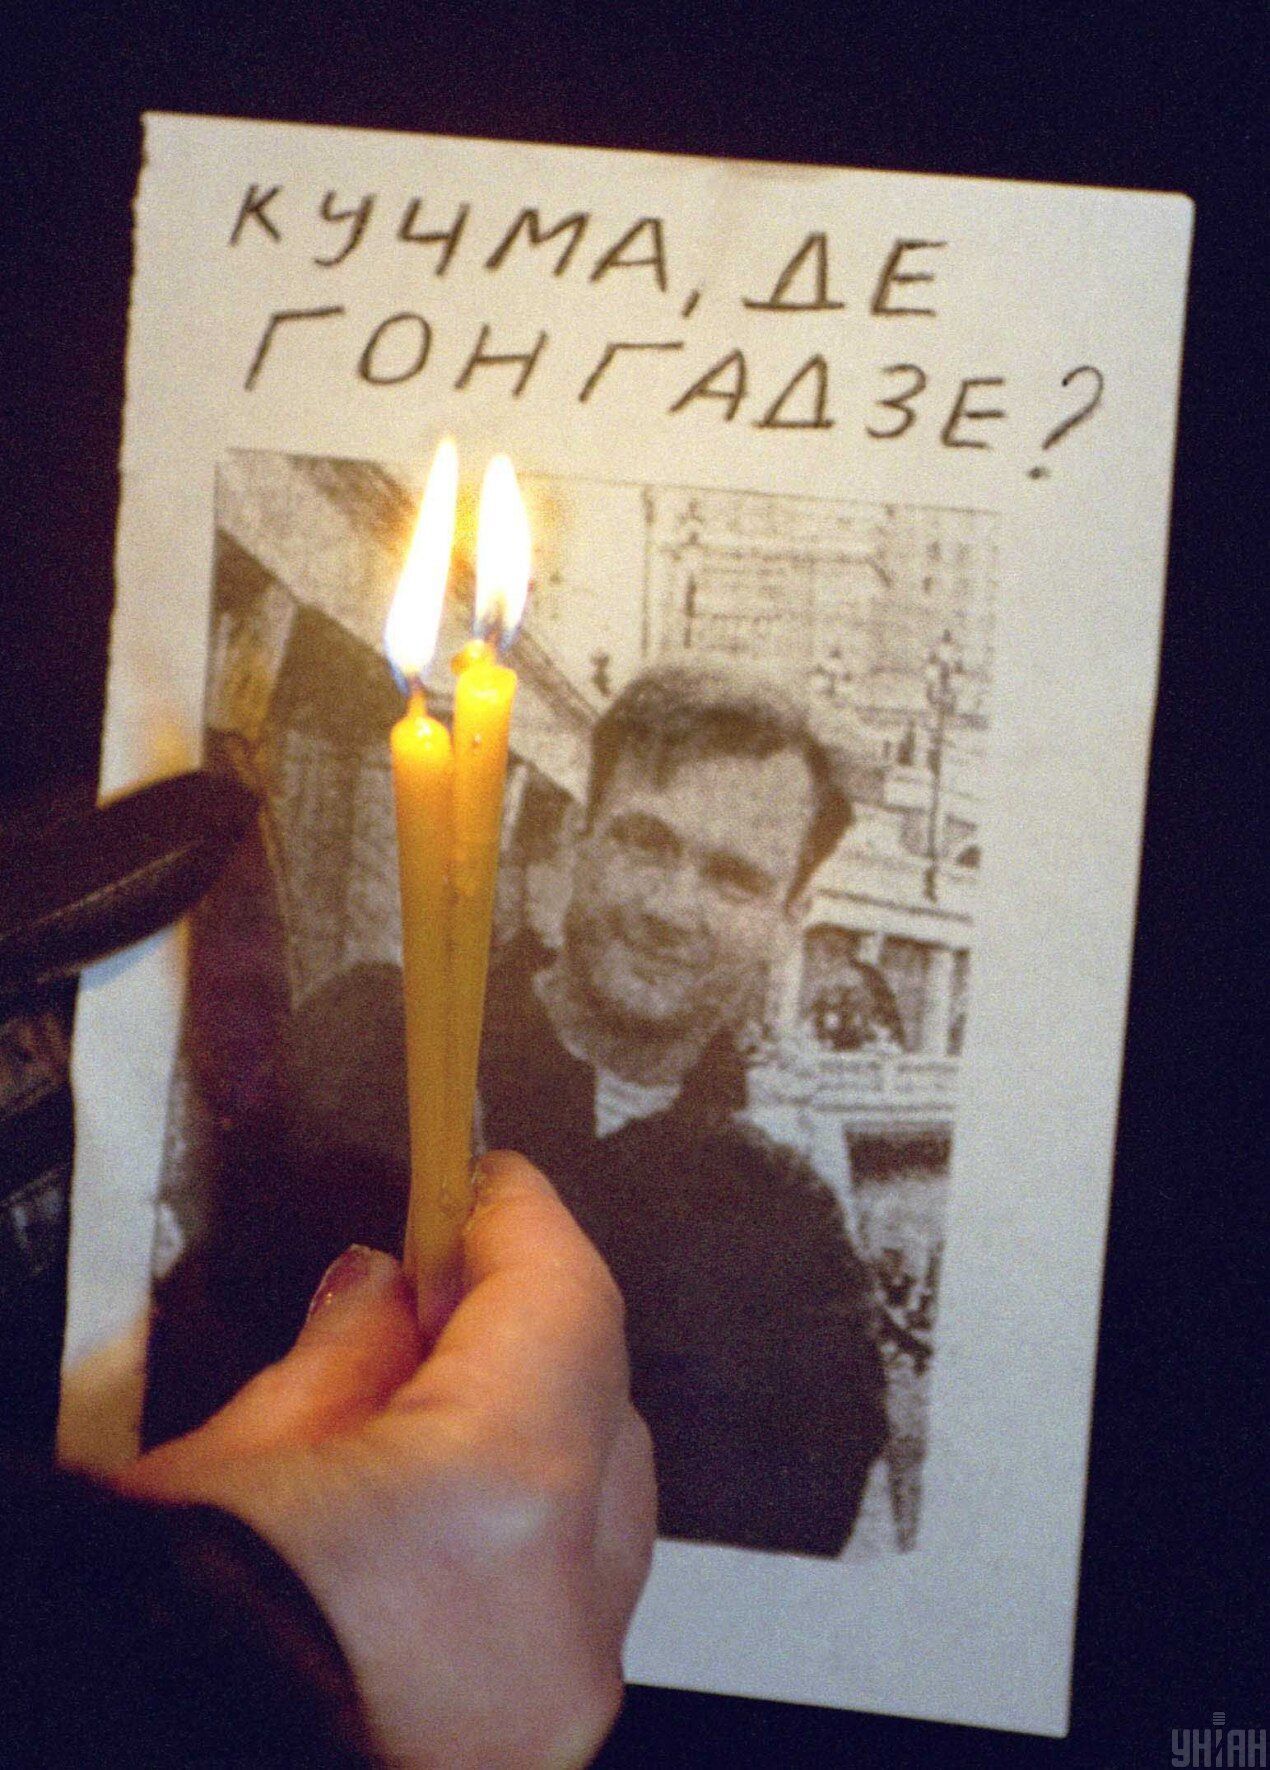 Акция памяти и ответственности 11 февраля 2001 года в Киеве